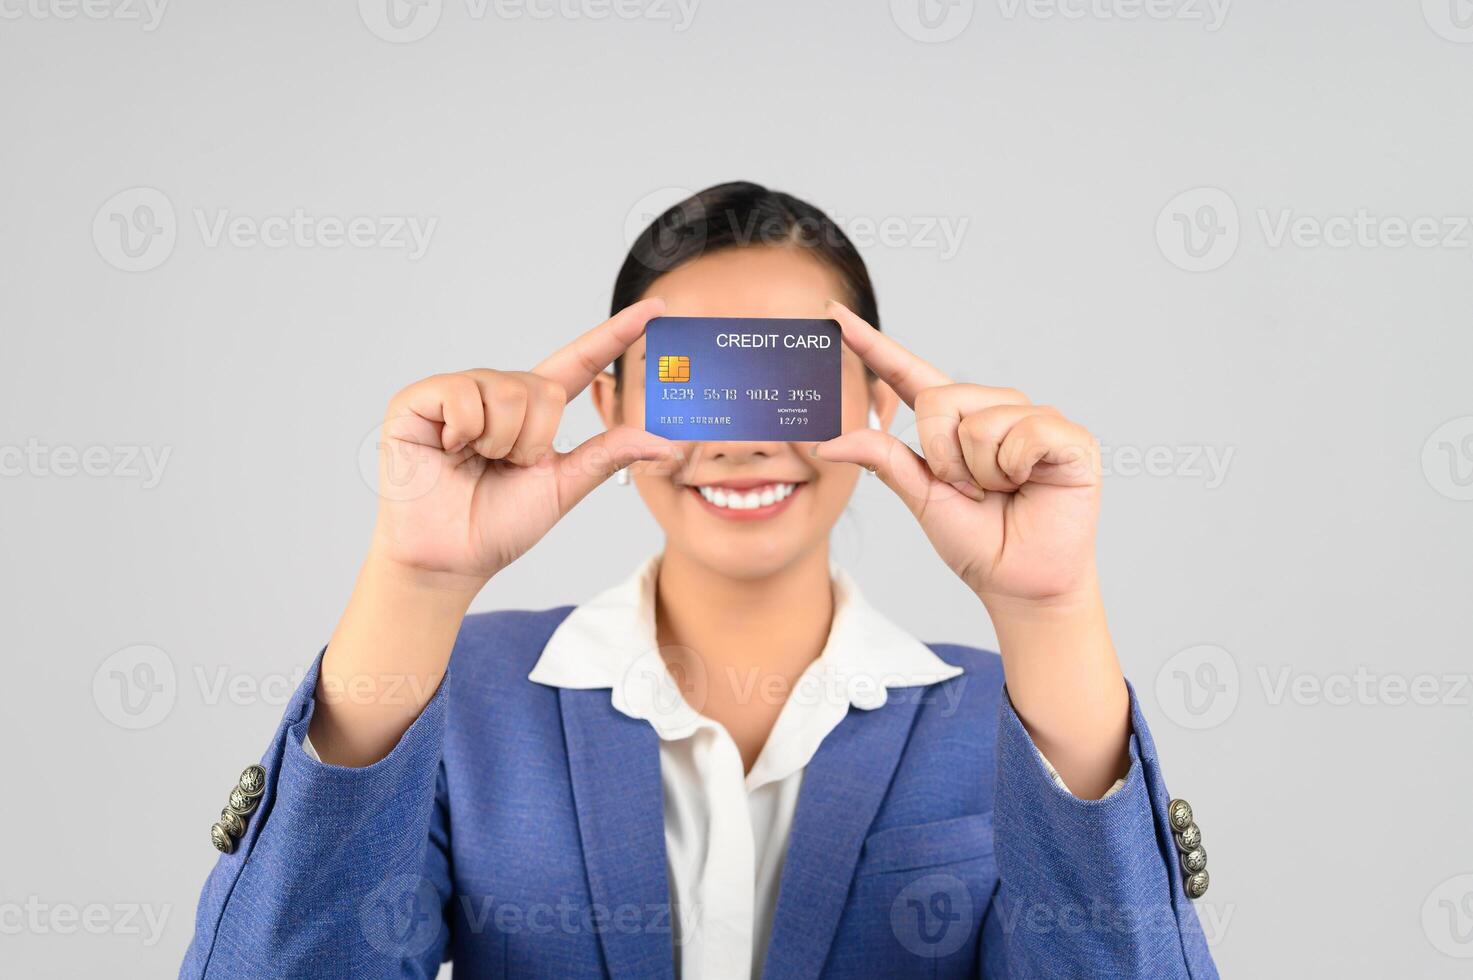 mujer hermosa joven en ropa formal para oficial con tarjeta de crédito foto